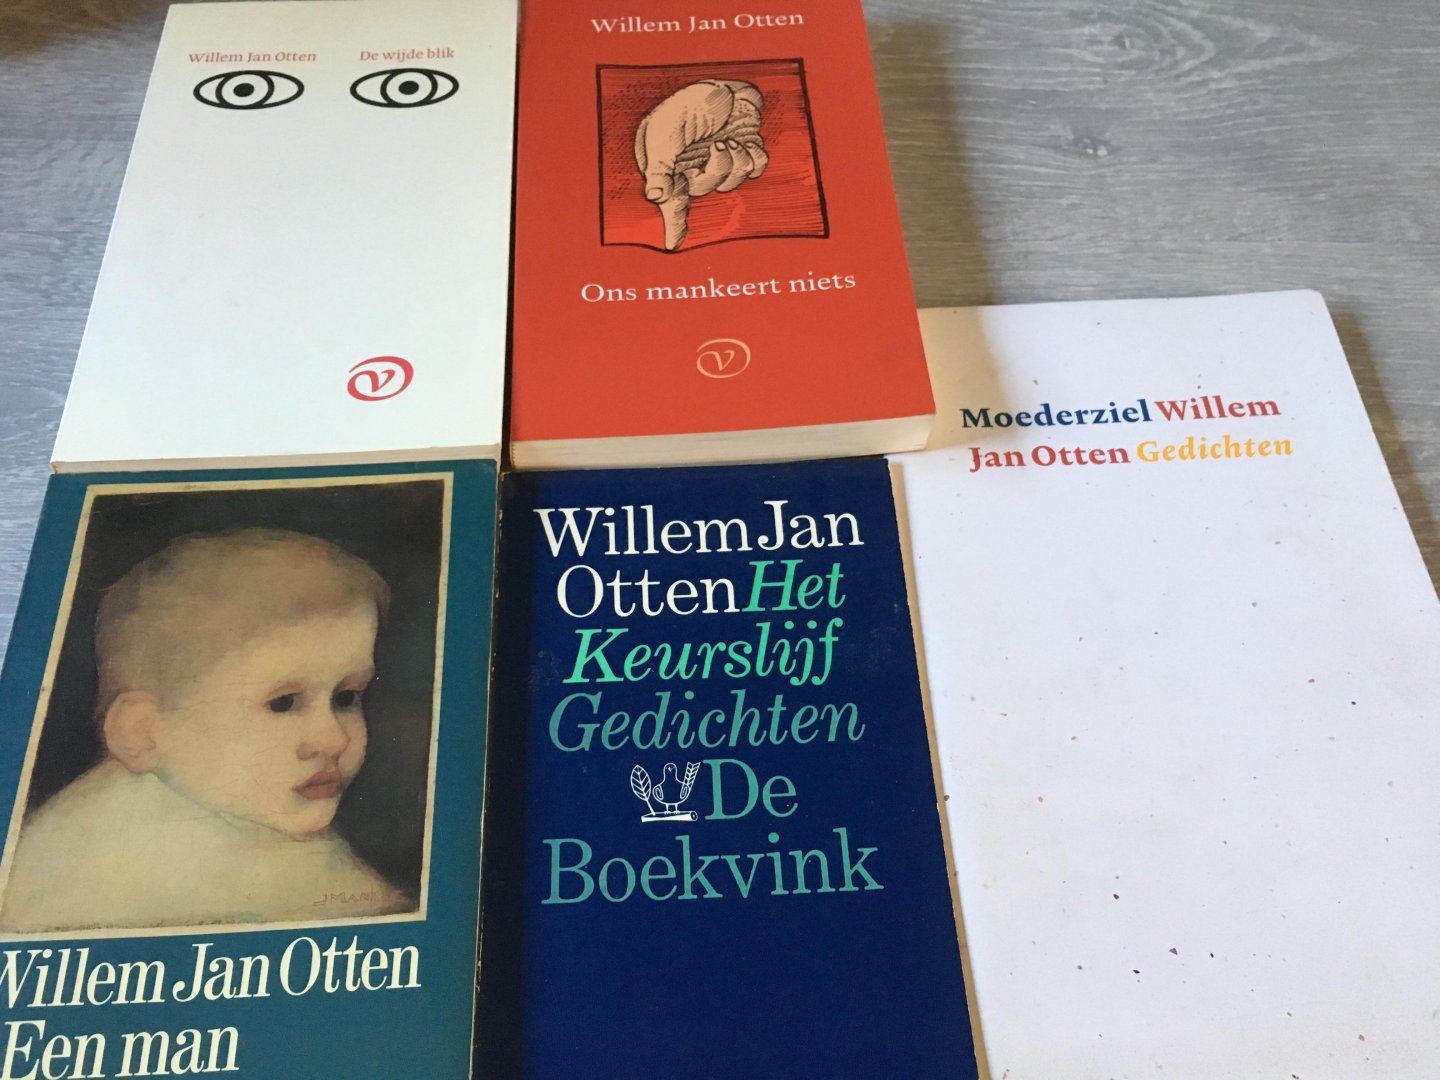 Willem Jan Otten - 5 uitgaven van Willem Jan Otten; Moederziel, Het Keurslijf, Ons mankeert niets, Een man van horen zeggen, De wijde blik, gesigneerd!